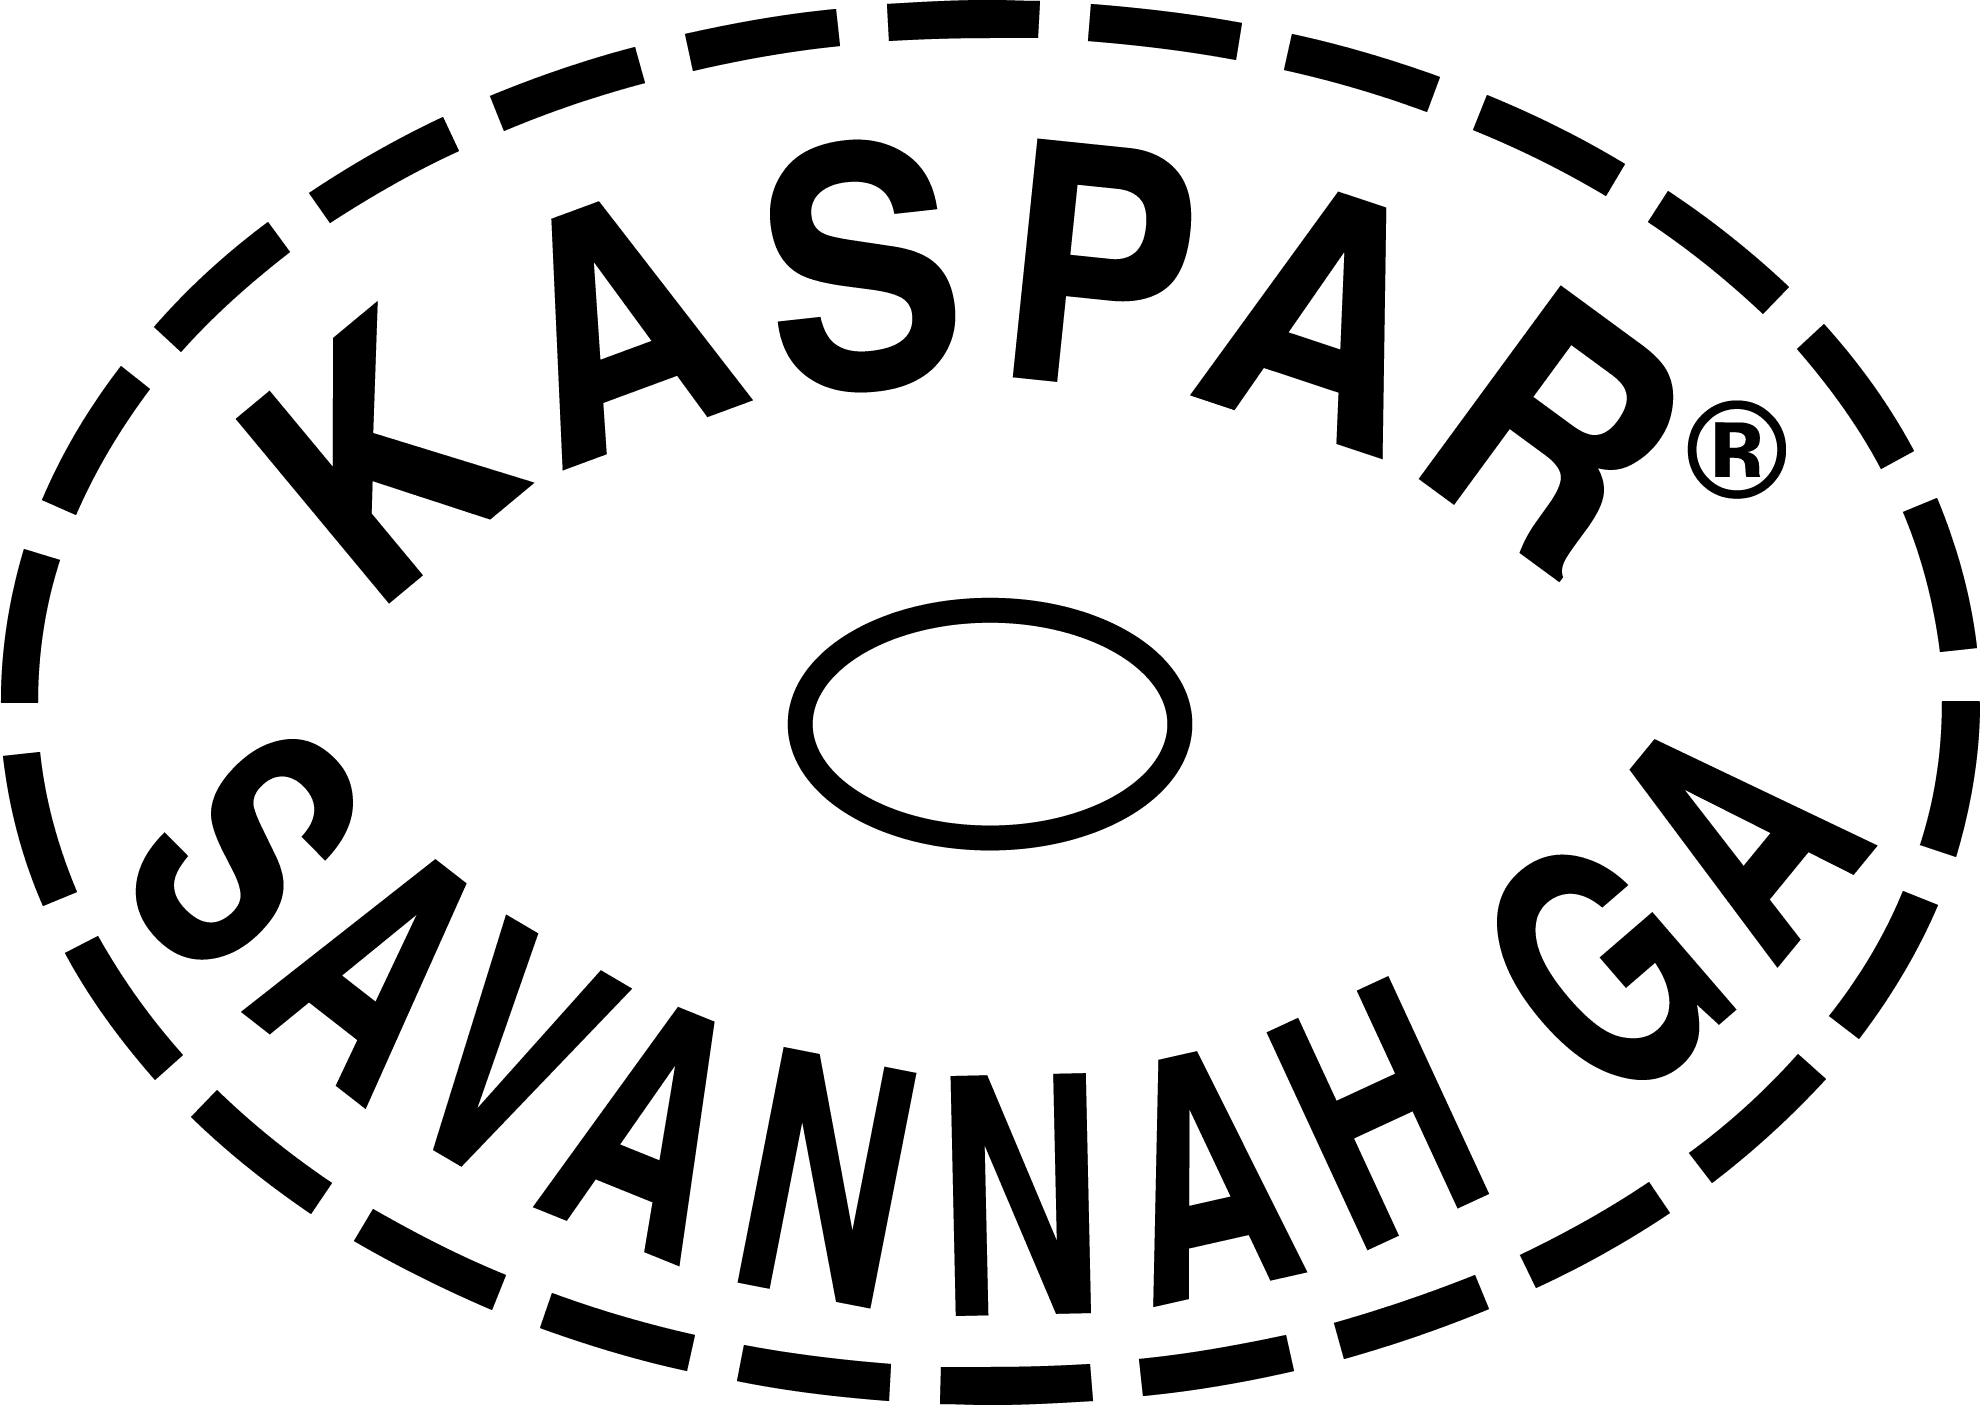 KASPAR® is a Registered Trademark of JodyJazz Inc.